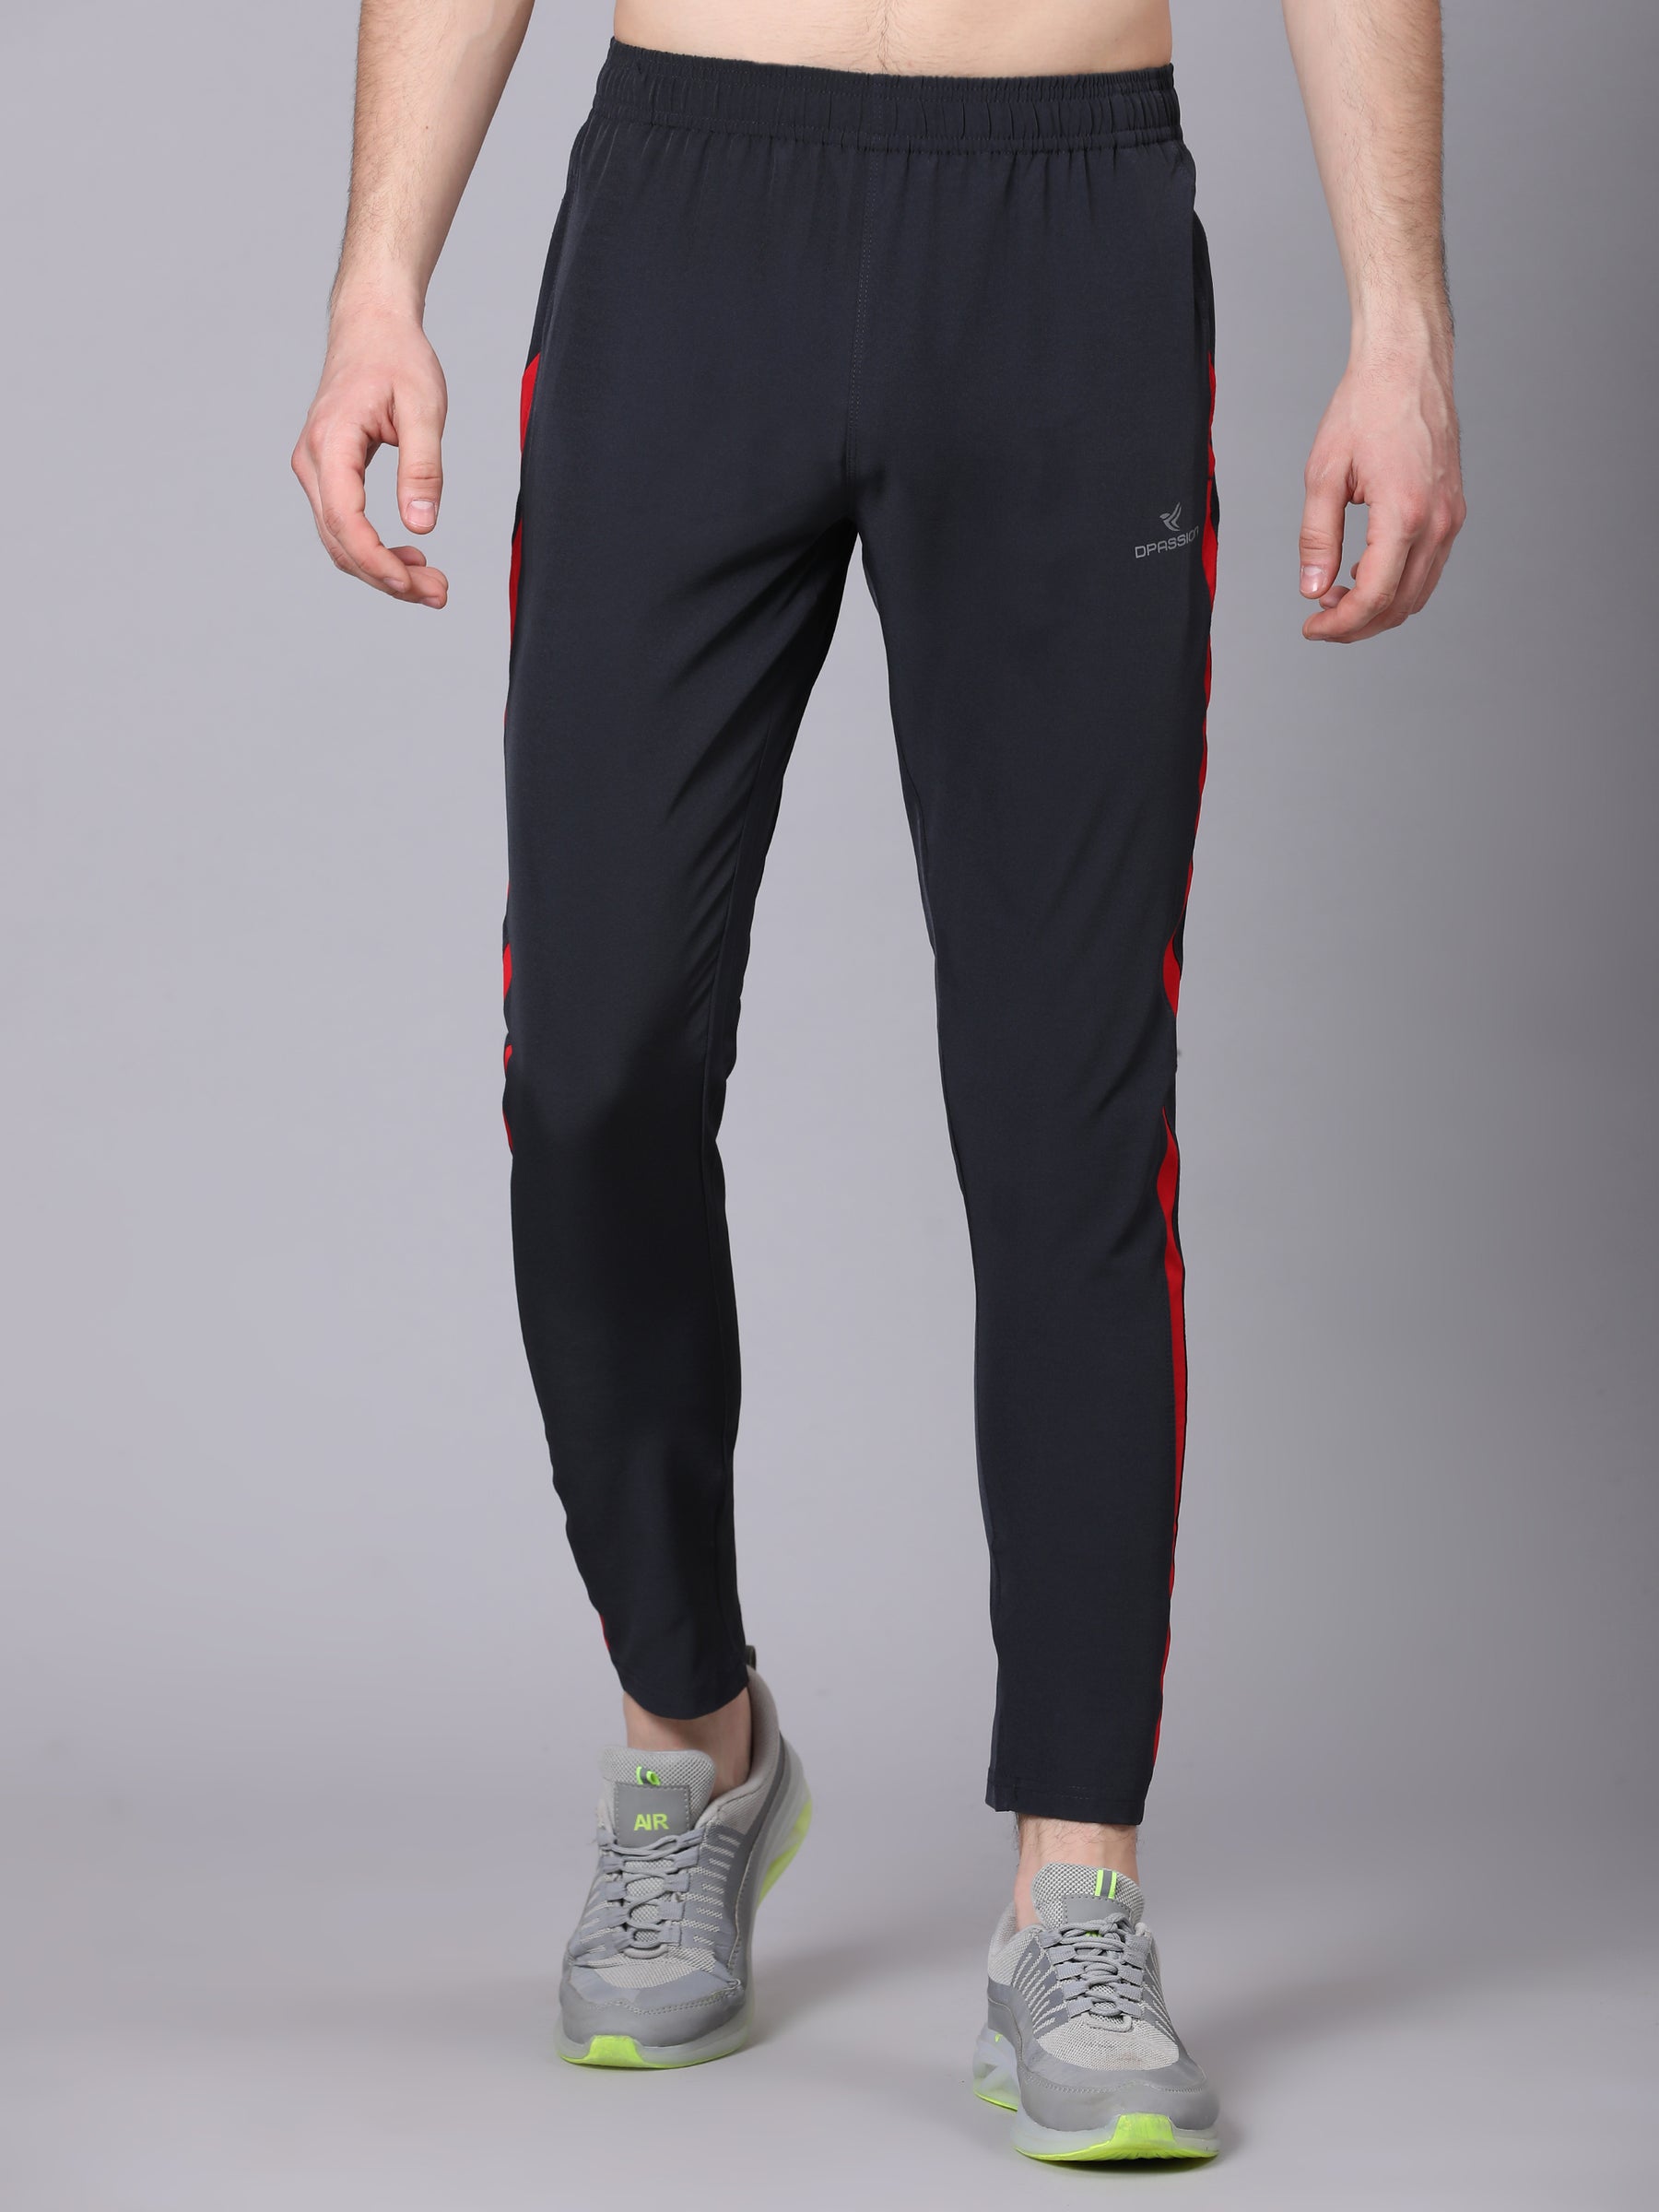 Buy Nike Mens DriFit Running Track PantsBlackMedium at Amazonin